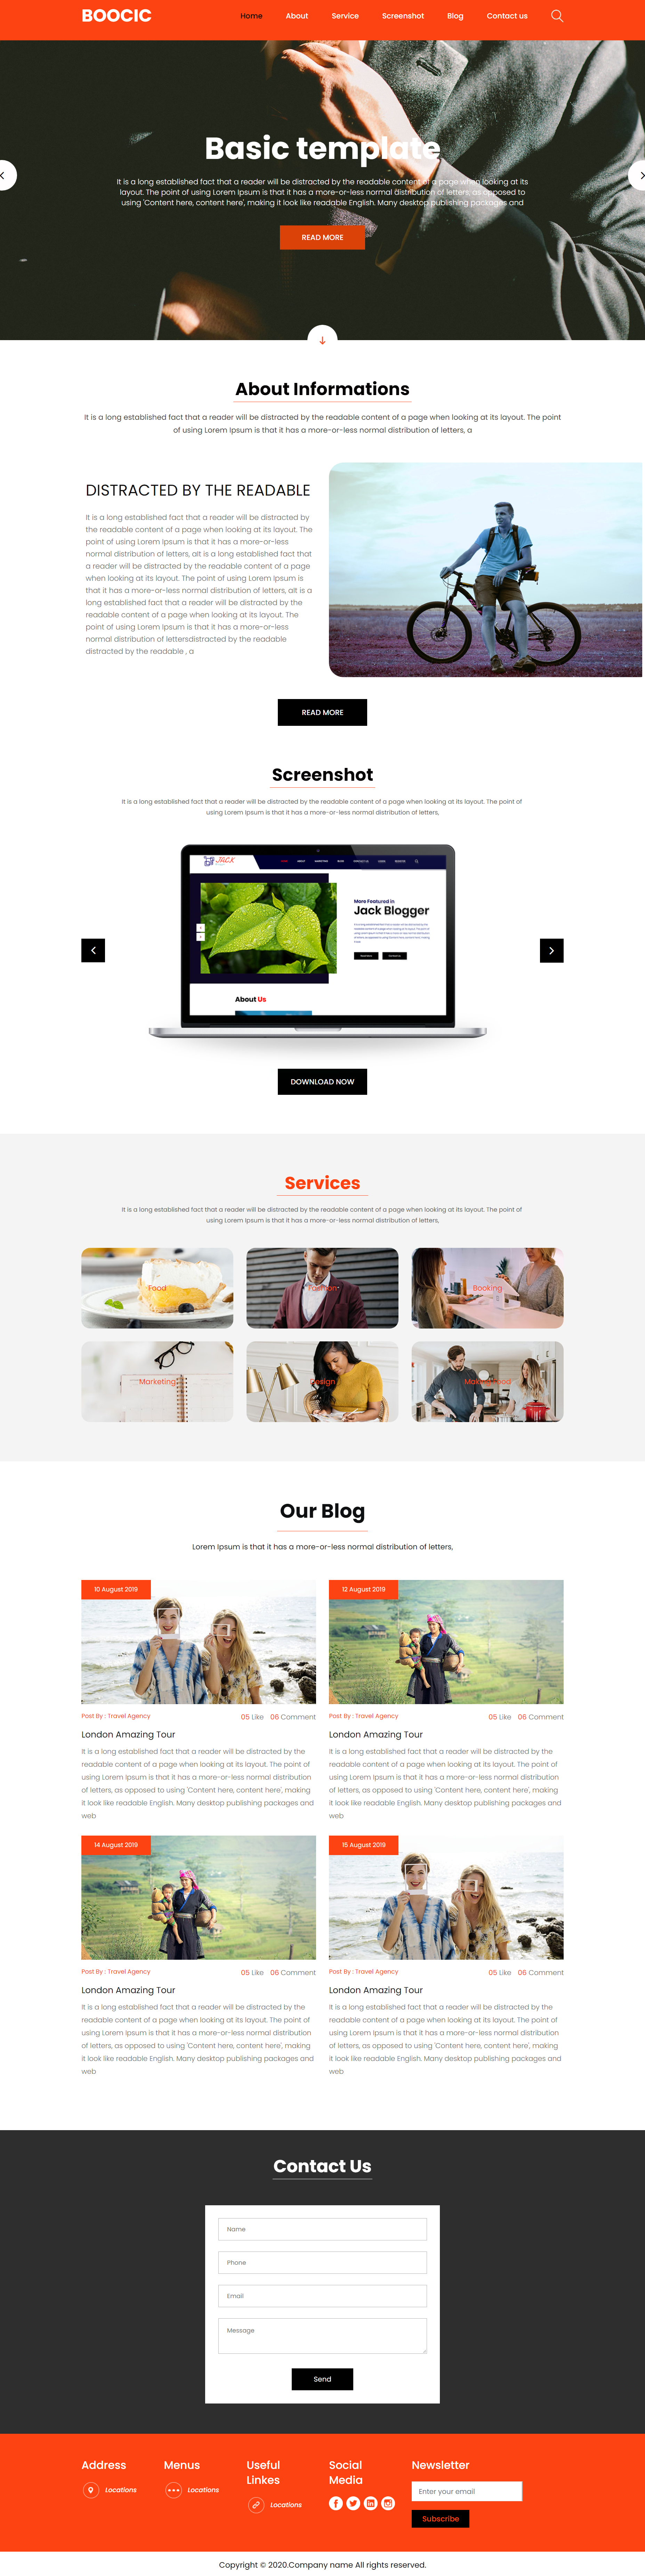 橙色简洁风格响应式作品设计企业网站模板